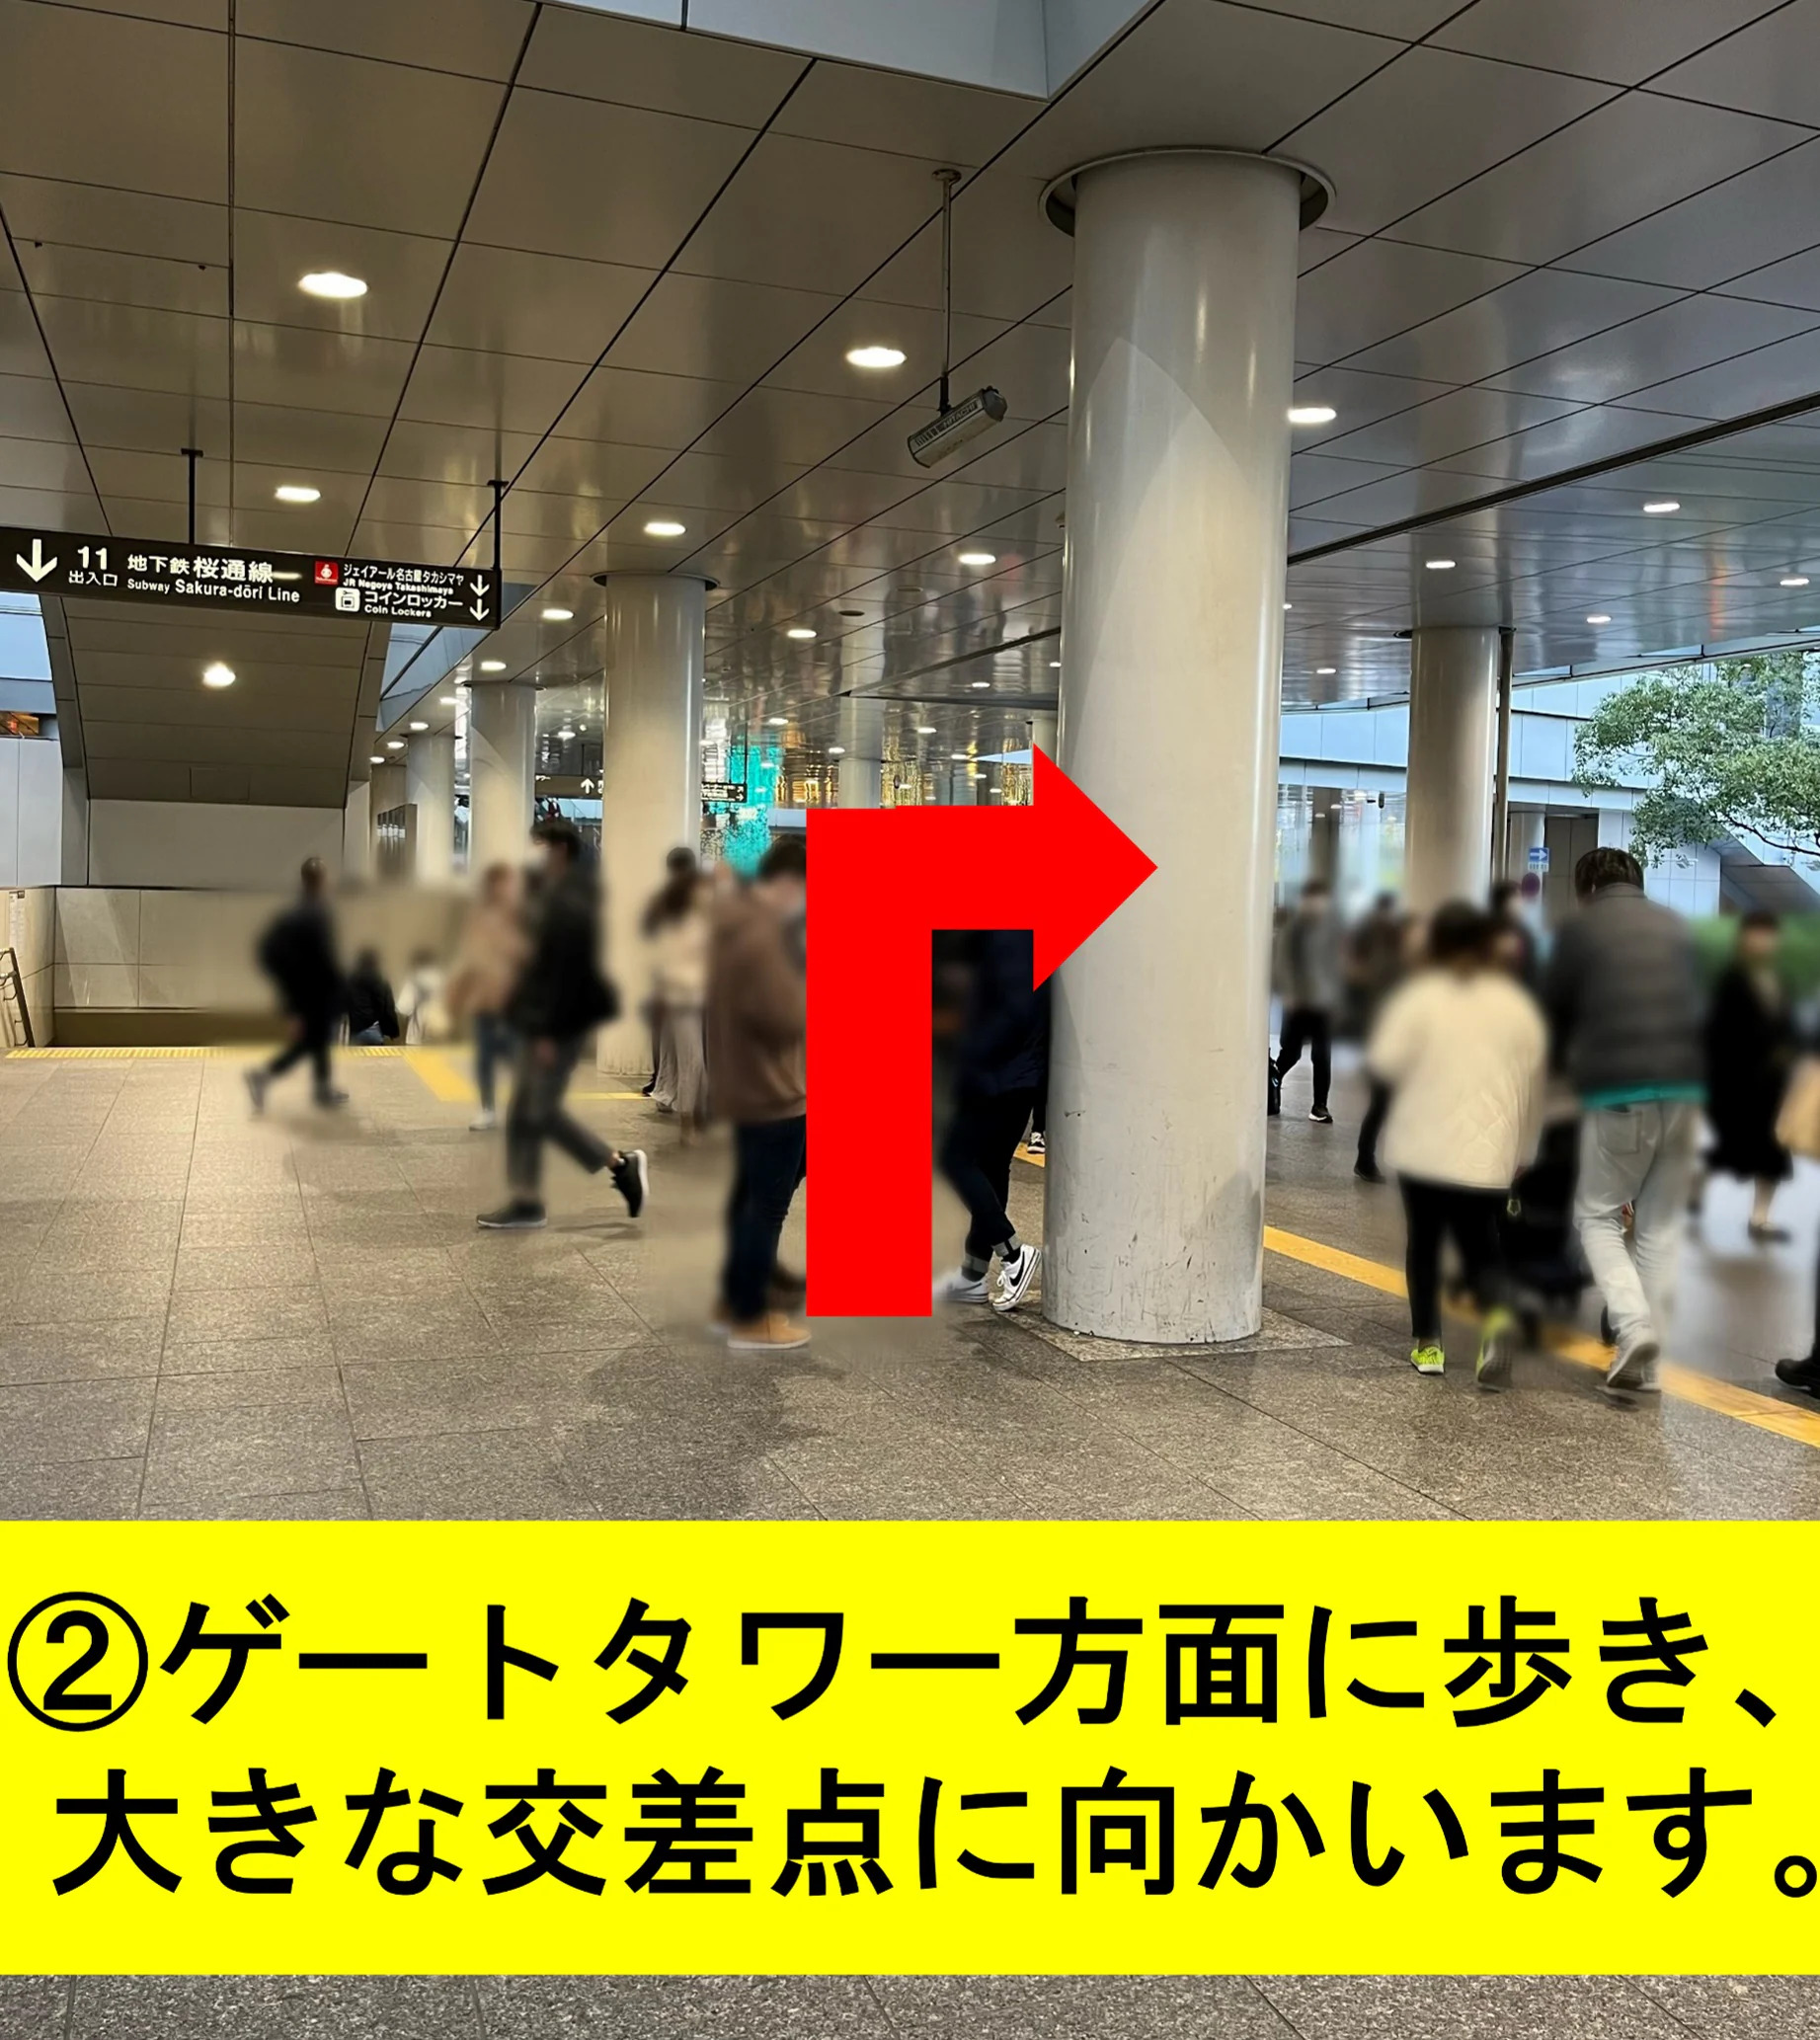 ゲートタワーに向かって道なりに進み名古屋駅交差点に向かいます。